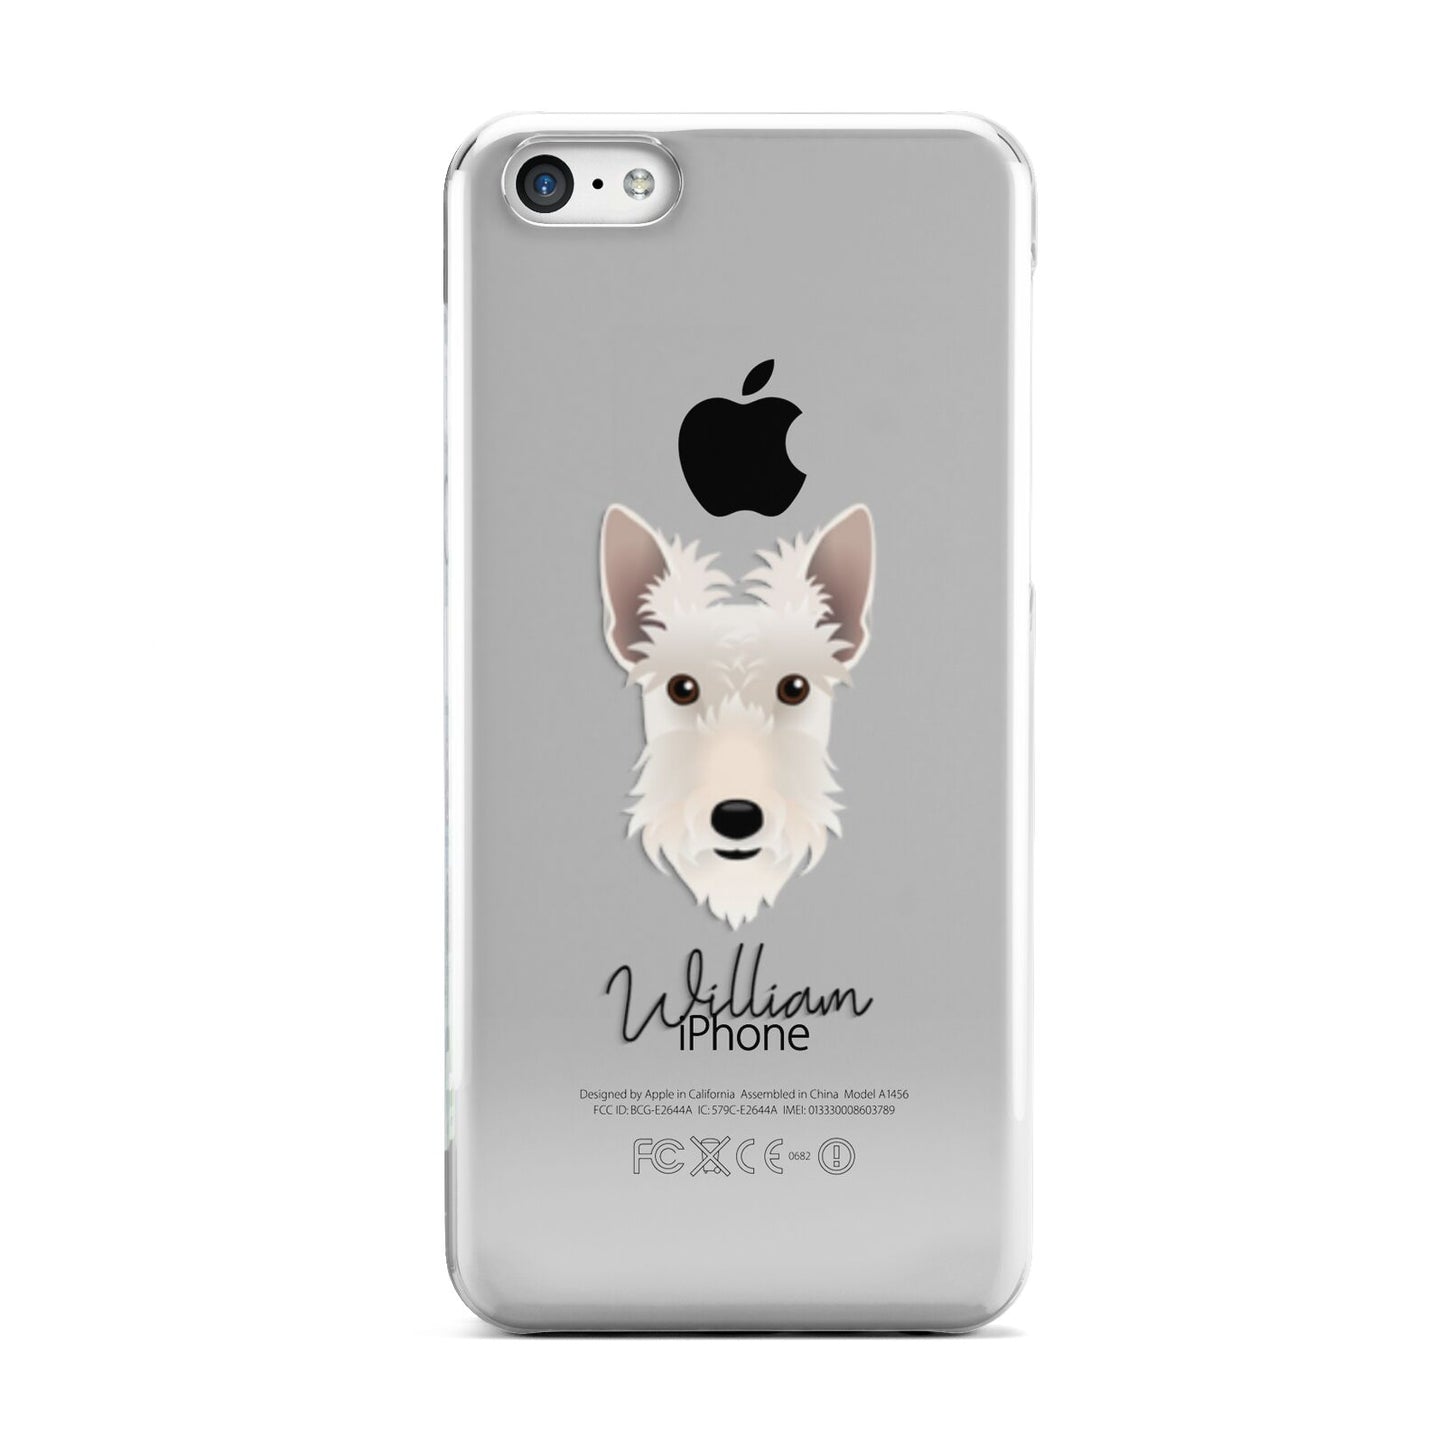 Scottish Terrier Personalised Apple iPhone 5c Case